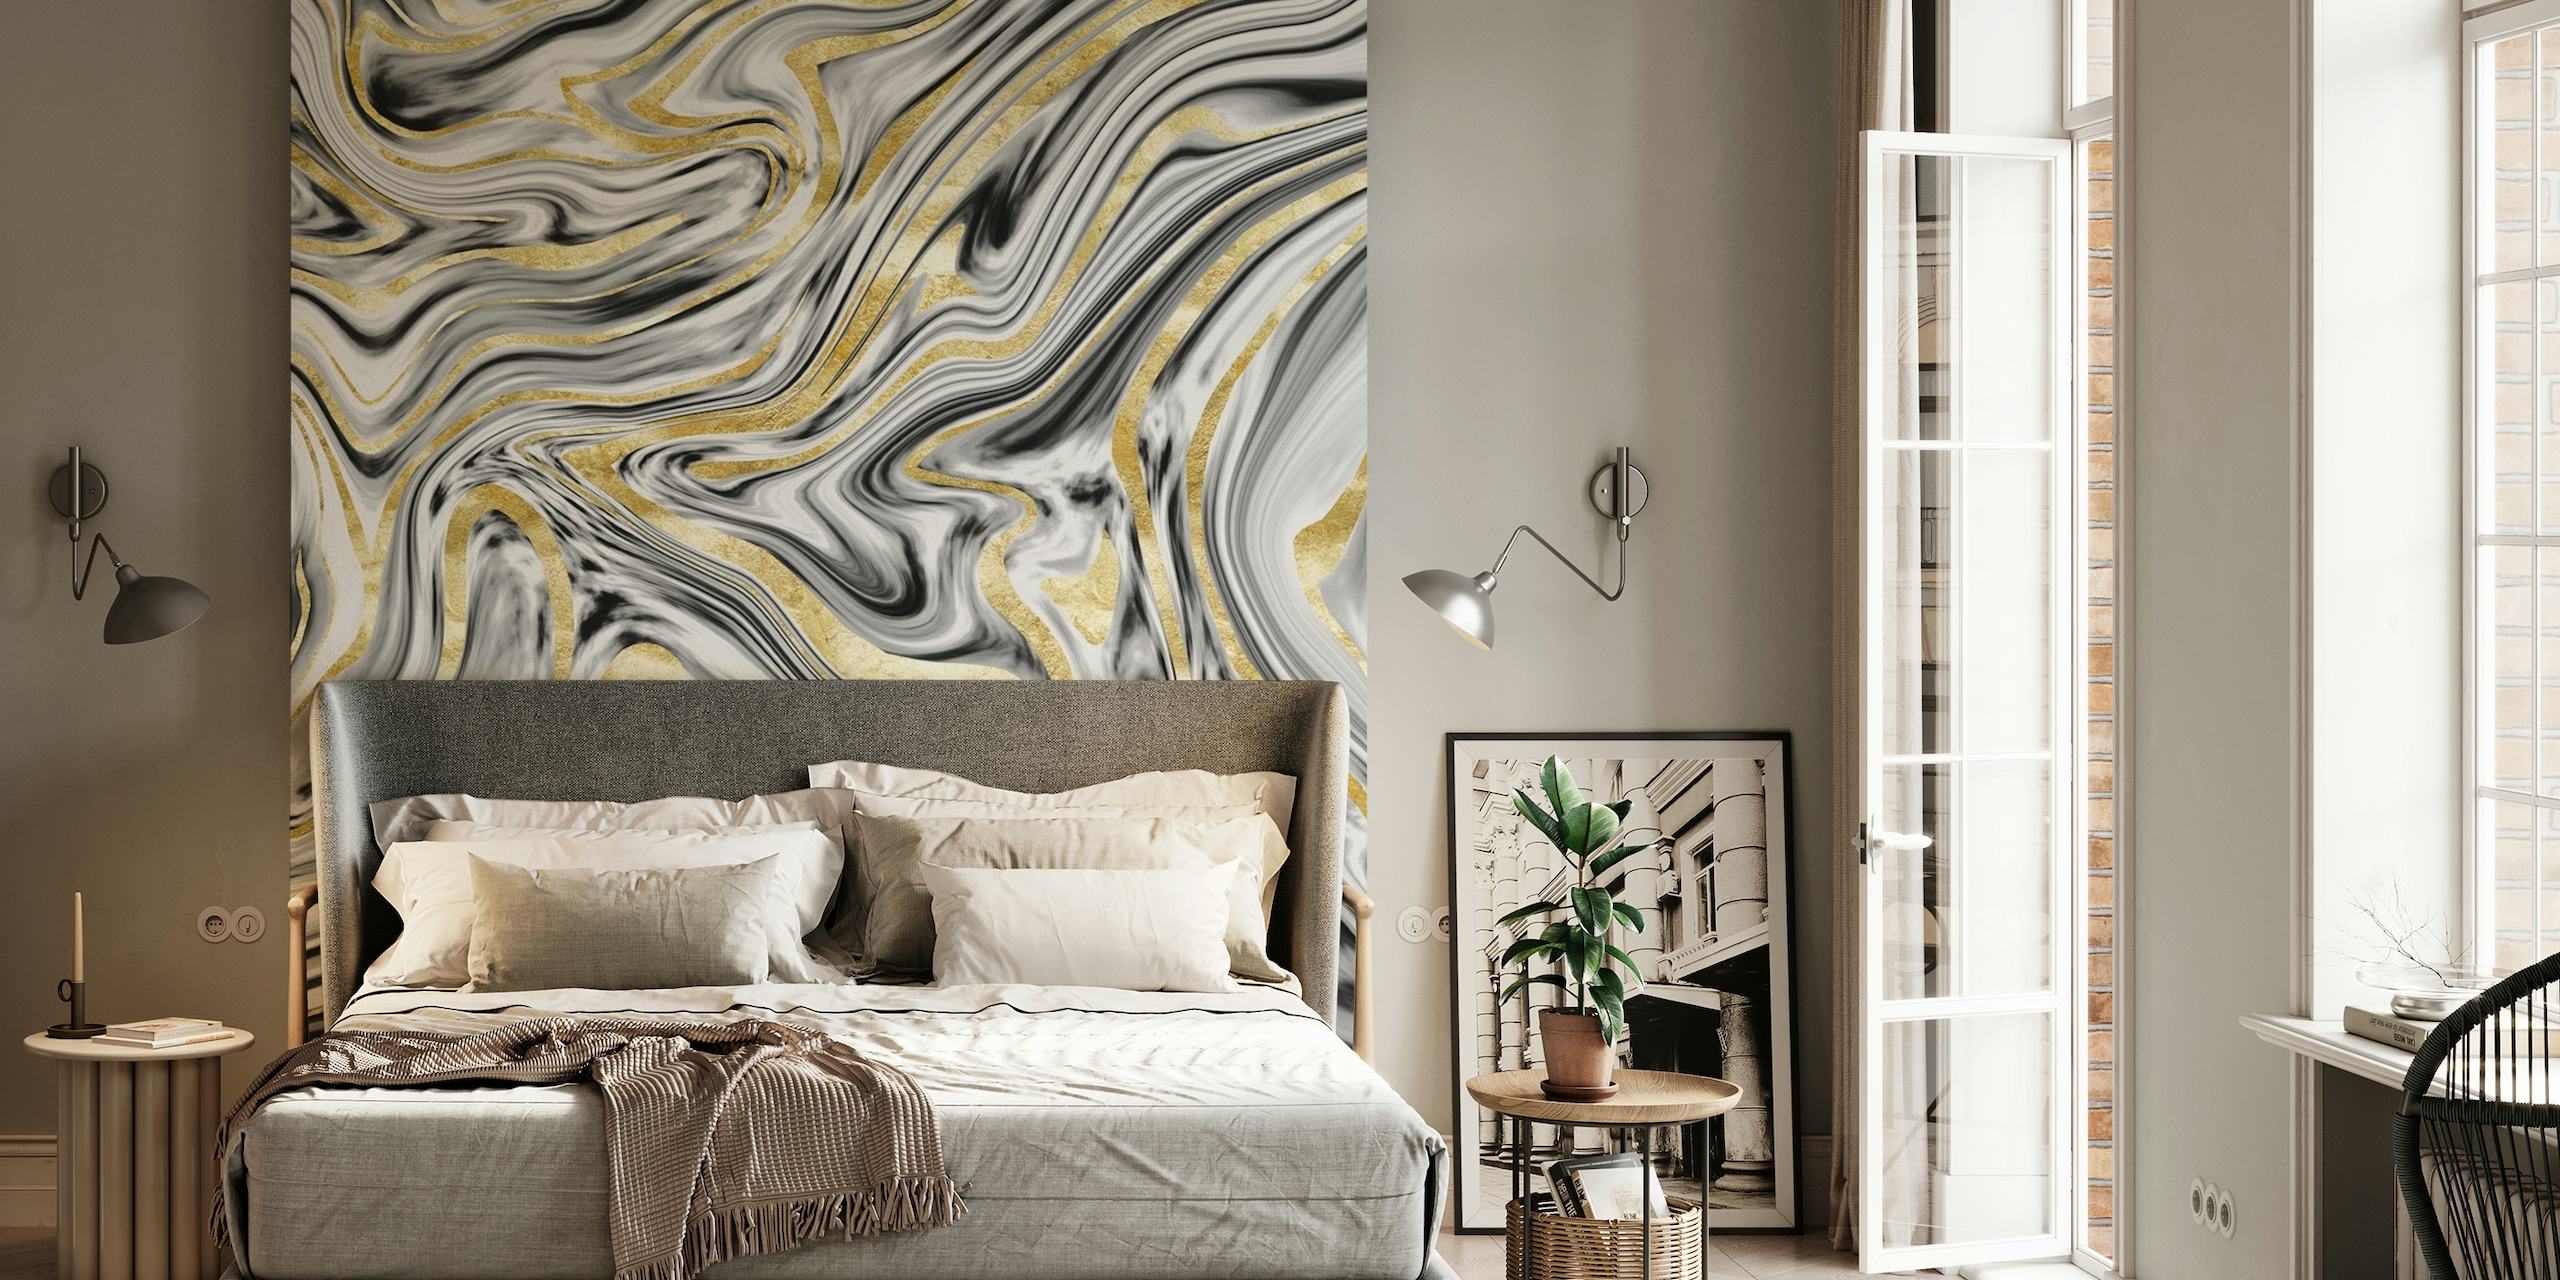 fotomural vinílico de parede com padrão de mármore cinza, preto, branco e dourado